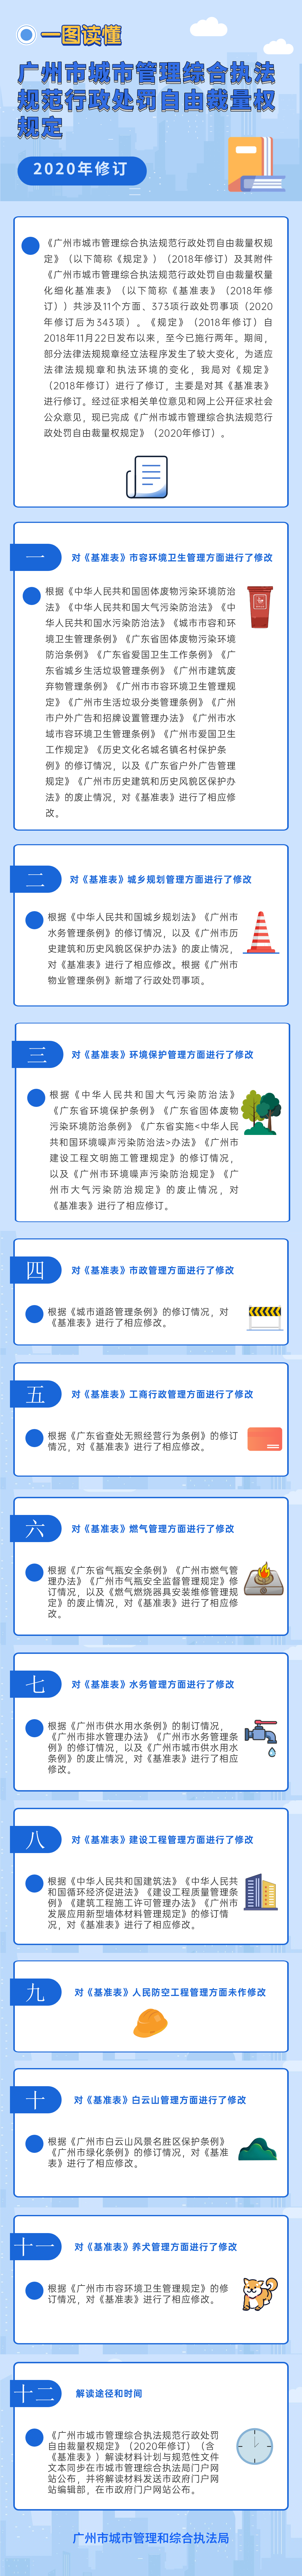 【一图读懂】广州市城市管理综合执法规范行政处罚自由裁量权规定2020年修订解读.png